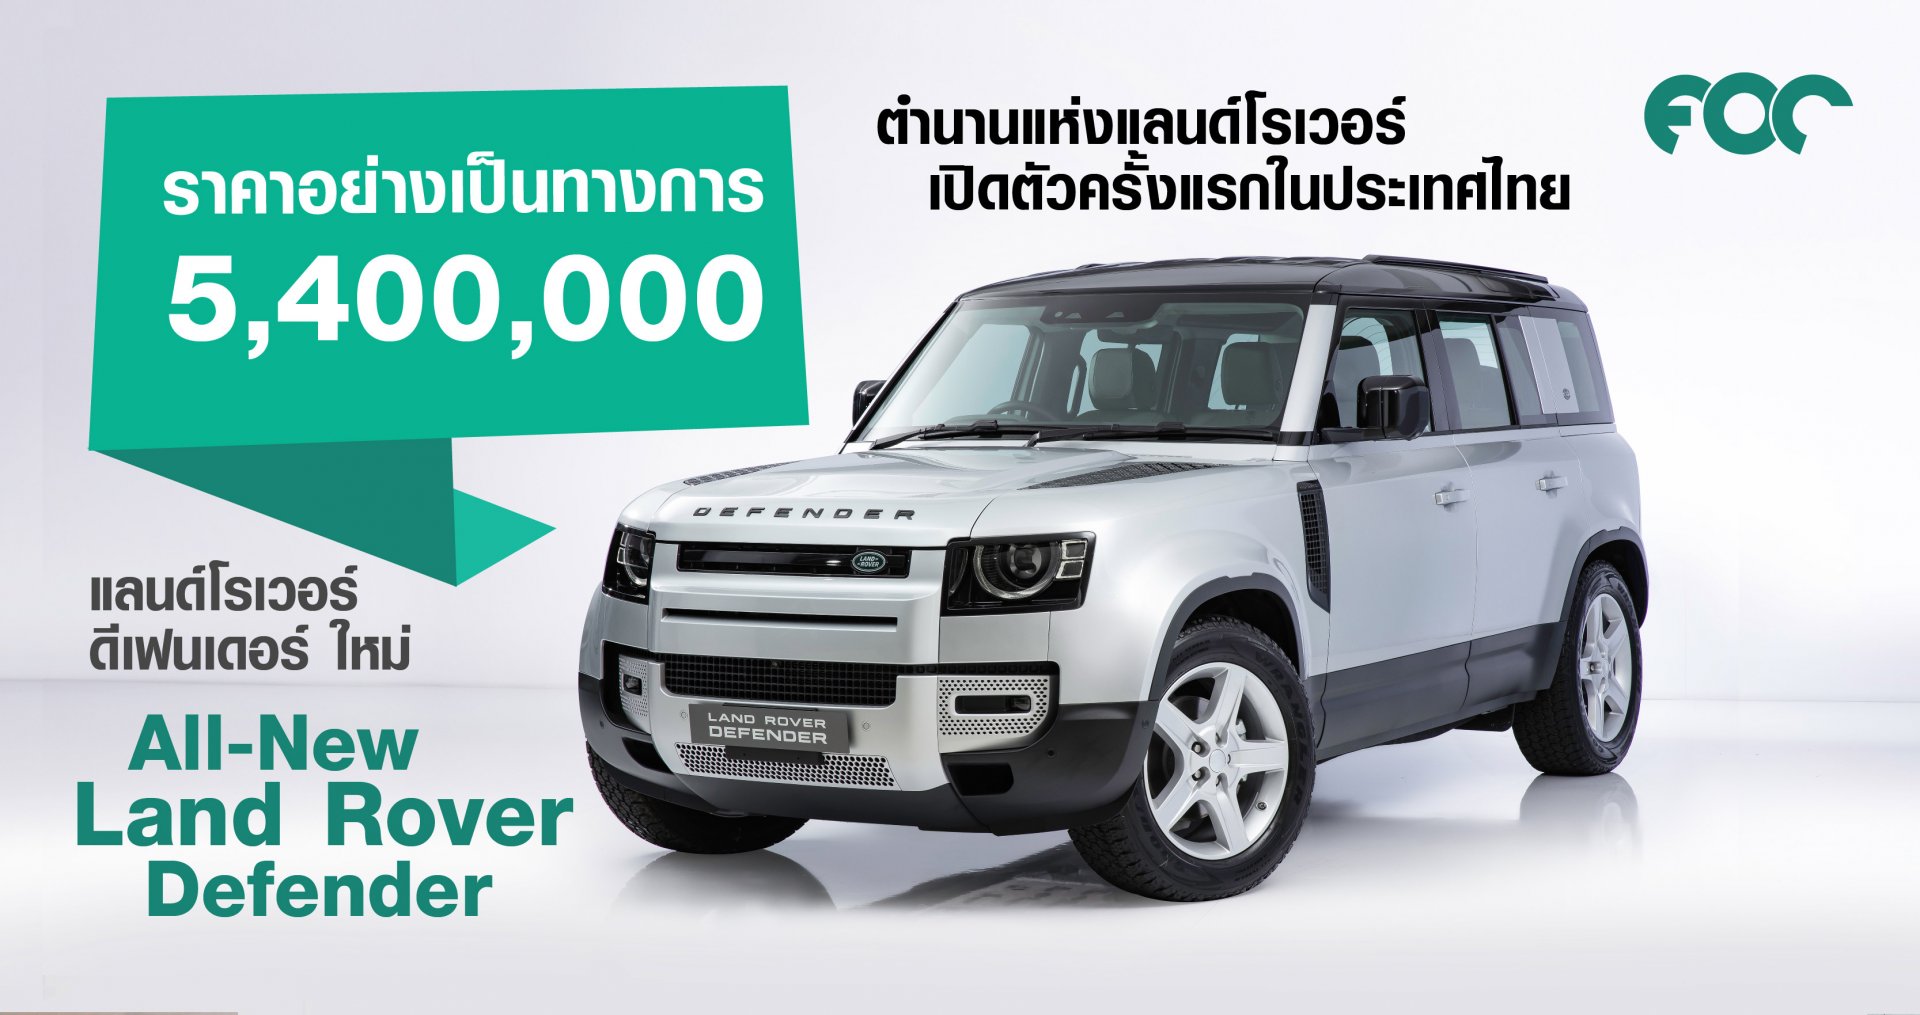 แลนด์โรเวอร์ ดีเฟนเดอร์ ใหม่ (All-New Land Rover Defender) ตำนานแห่งแลนด์โรเวอร์ ราคาอย่างเป็นทางการ 5,400,000 บาท พร้อมพลิกโฉมการสั่งรถแลนด์โรเวอร์ด้วยดิจิทัลแพลตฟอร์ม